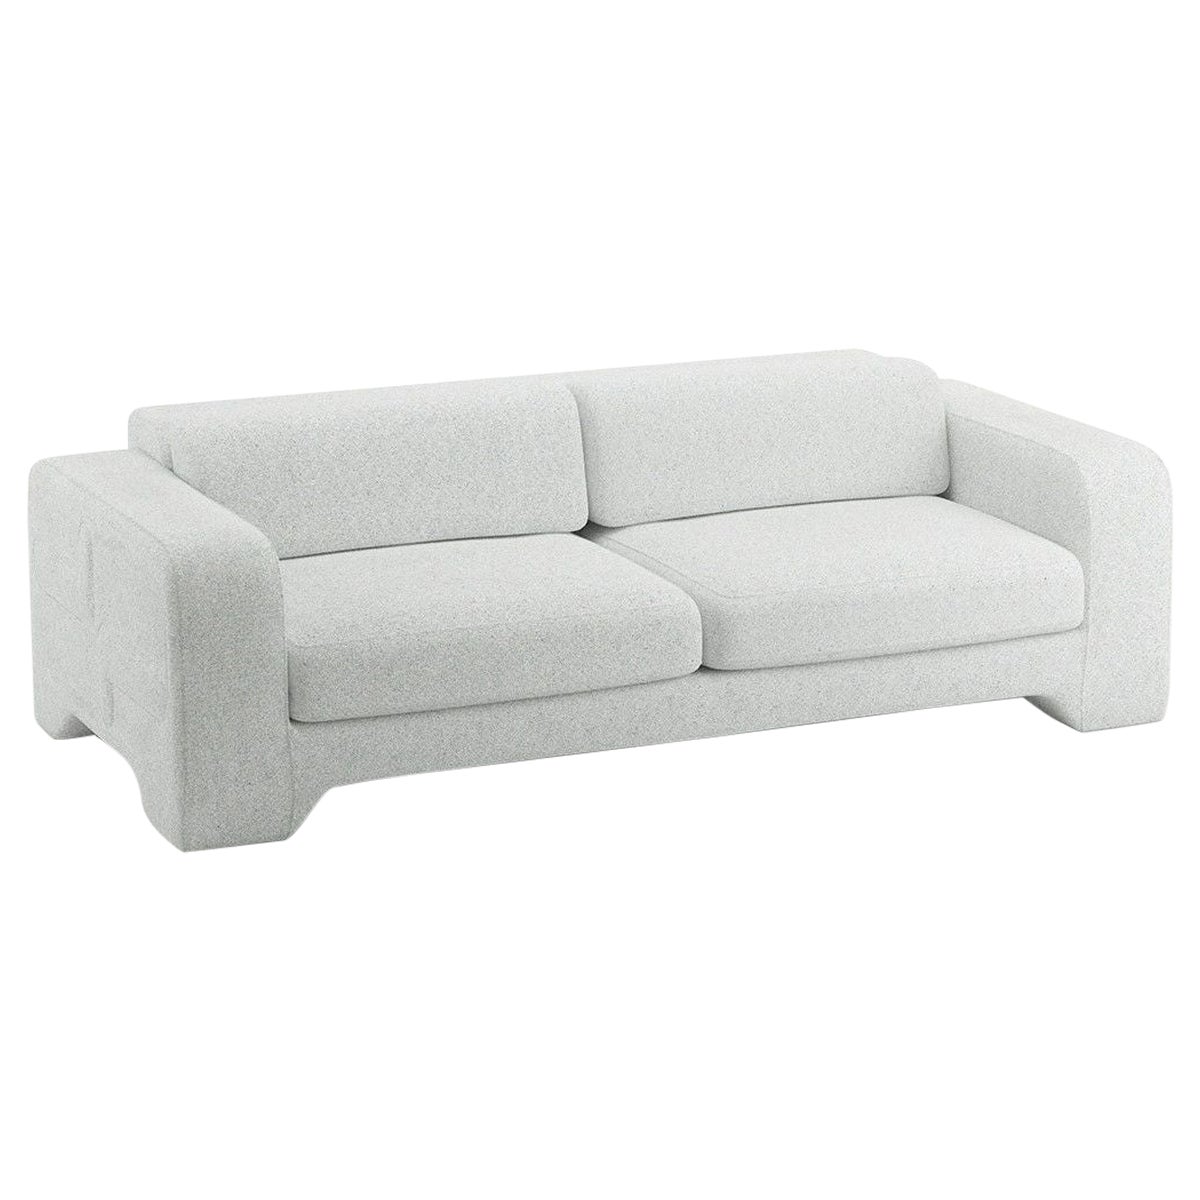 Popus Editions Giovanna 3 Seater Sofa in Cloud Zanzi Linen Fabric For Sale